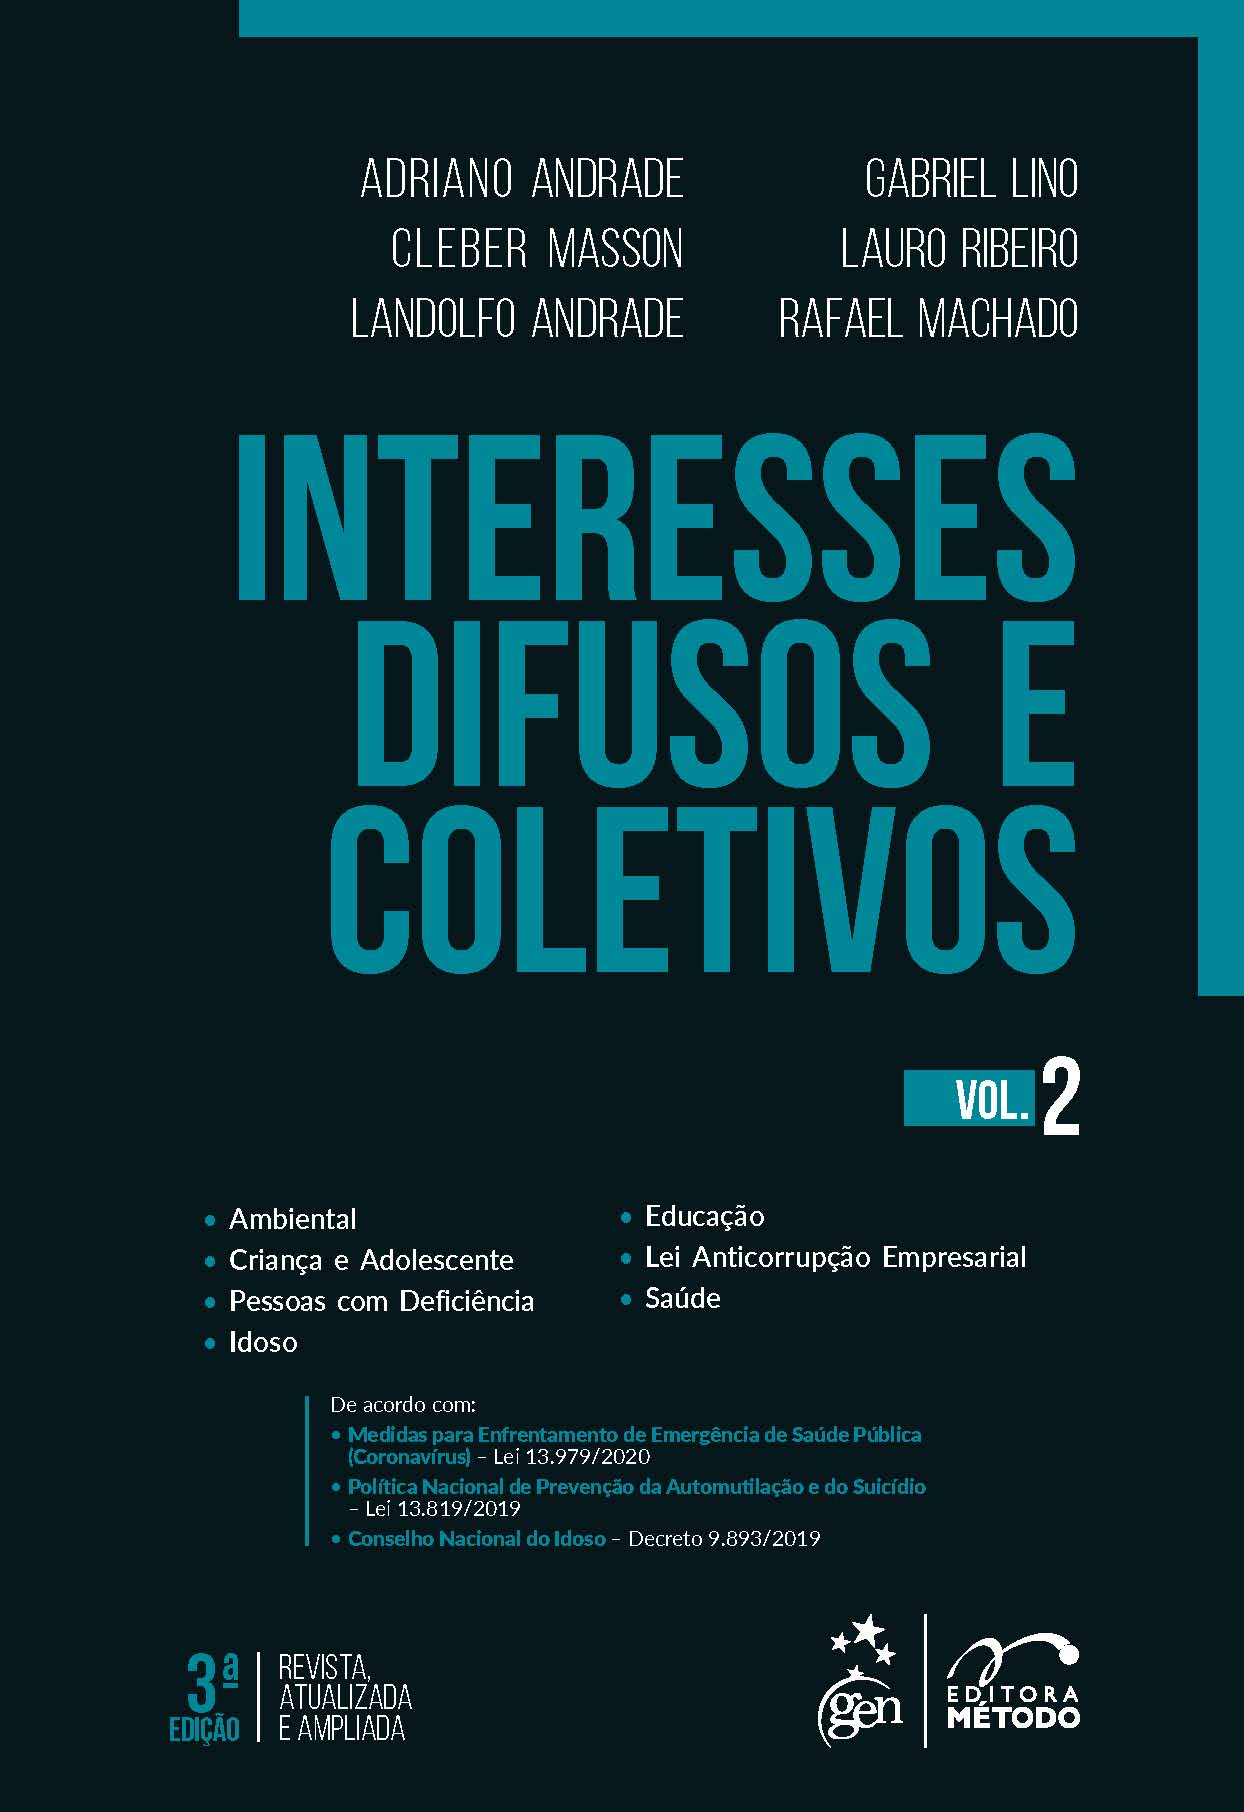 Interesses Difusos e Coletivos - Vol. 2 - 03Ed/20